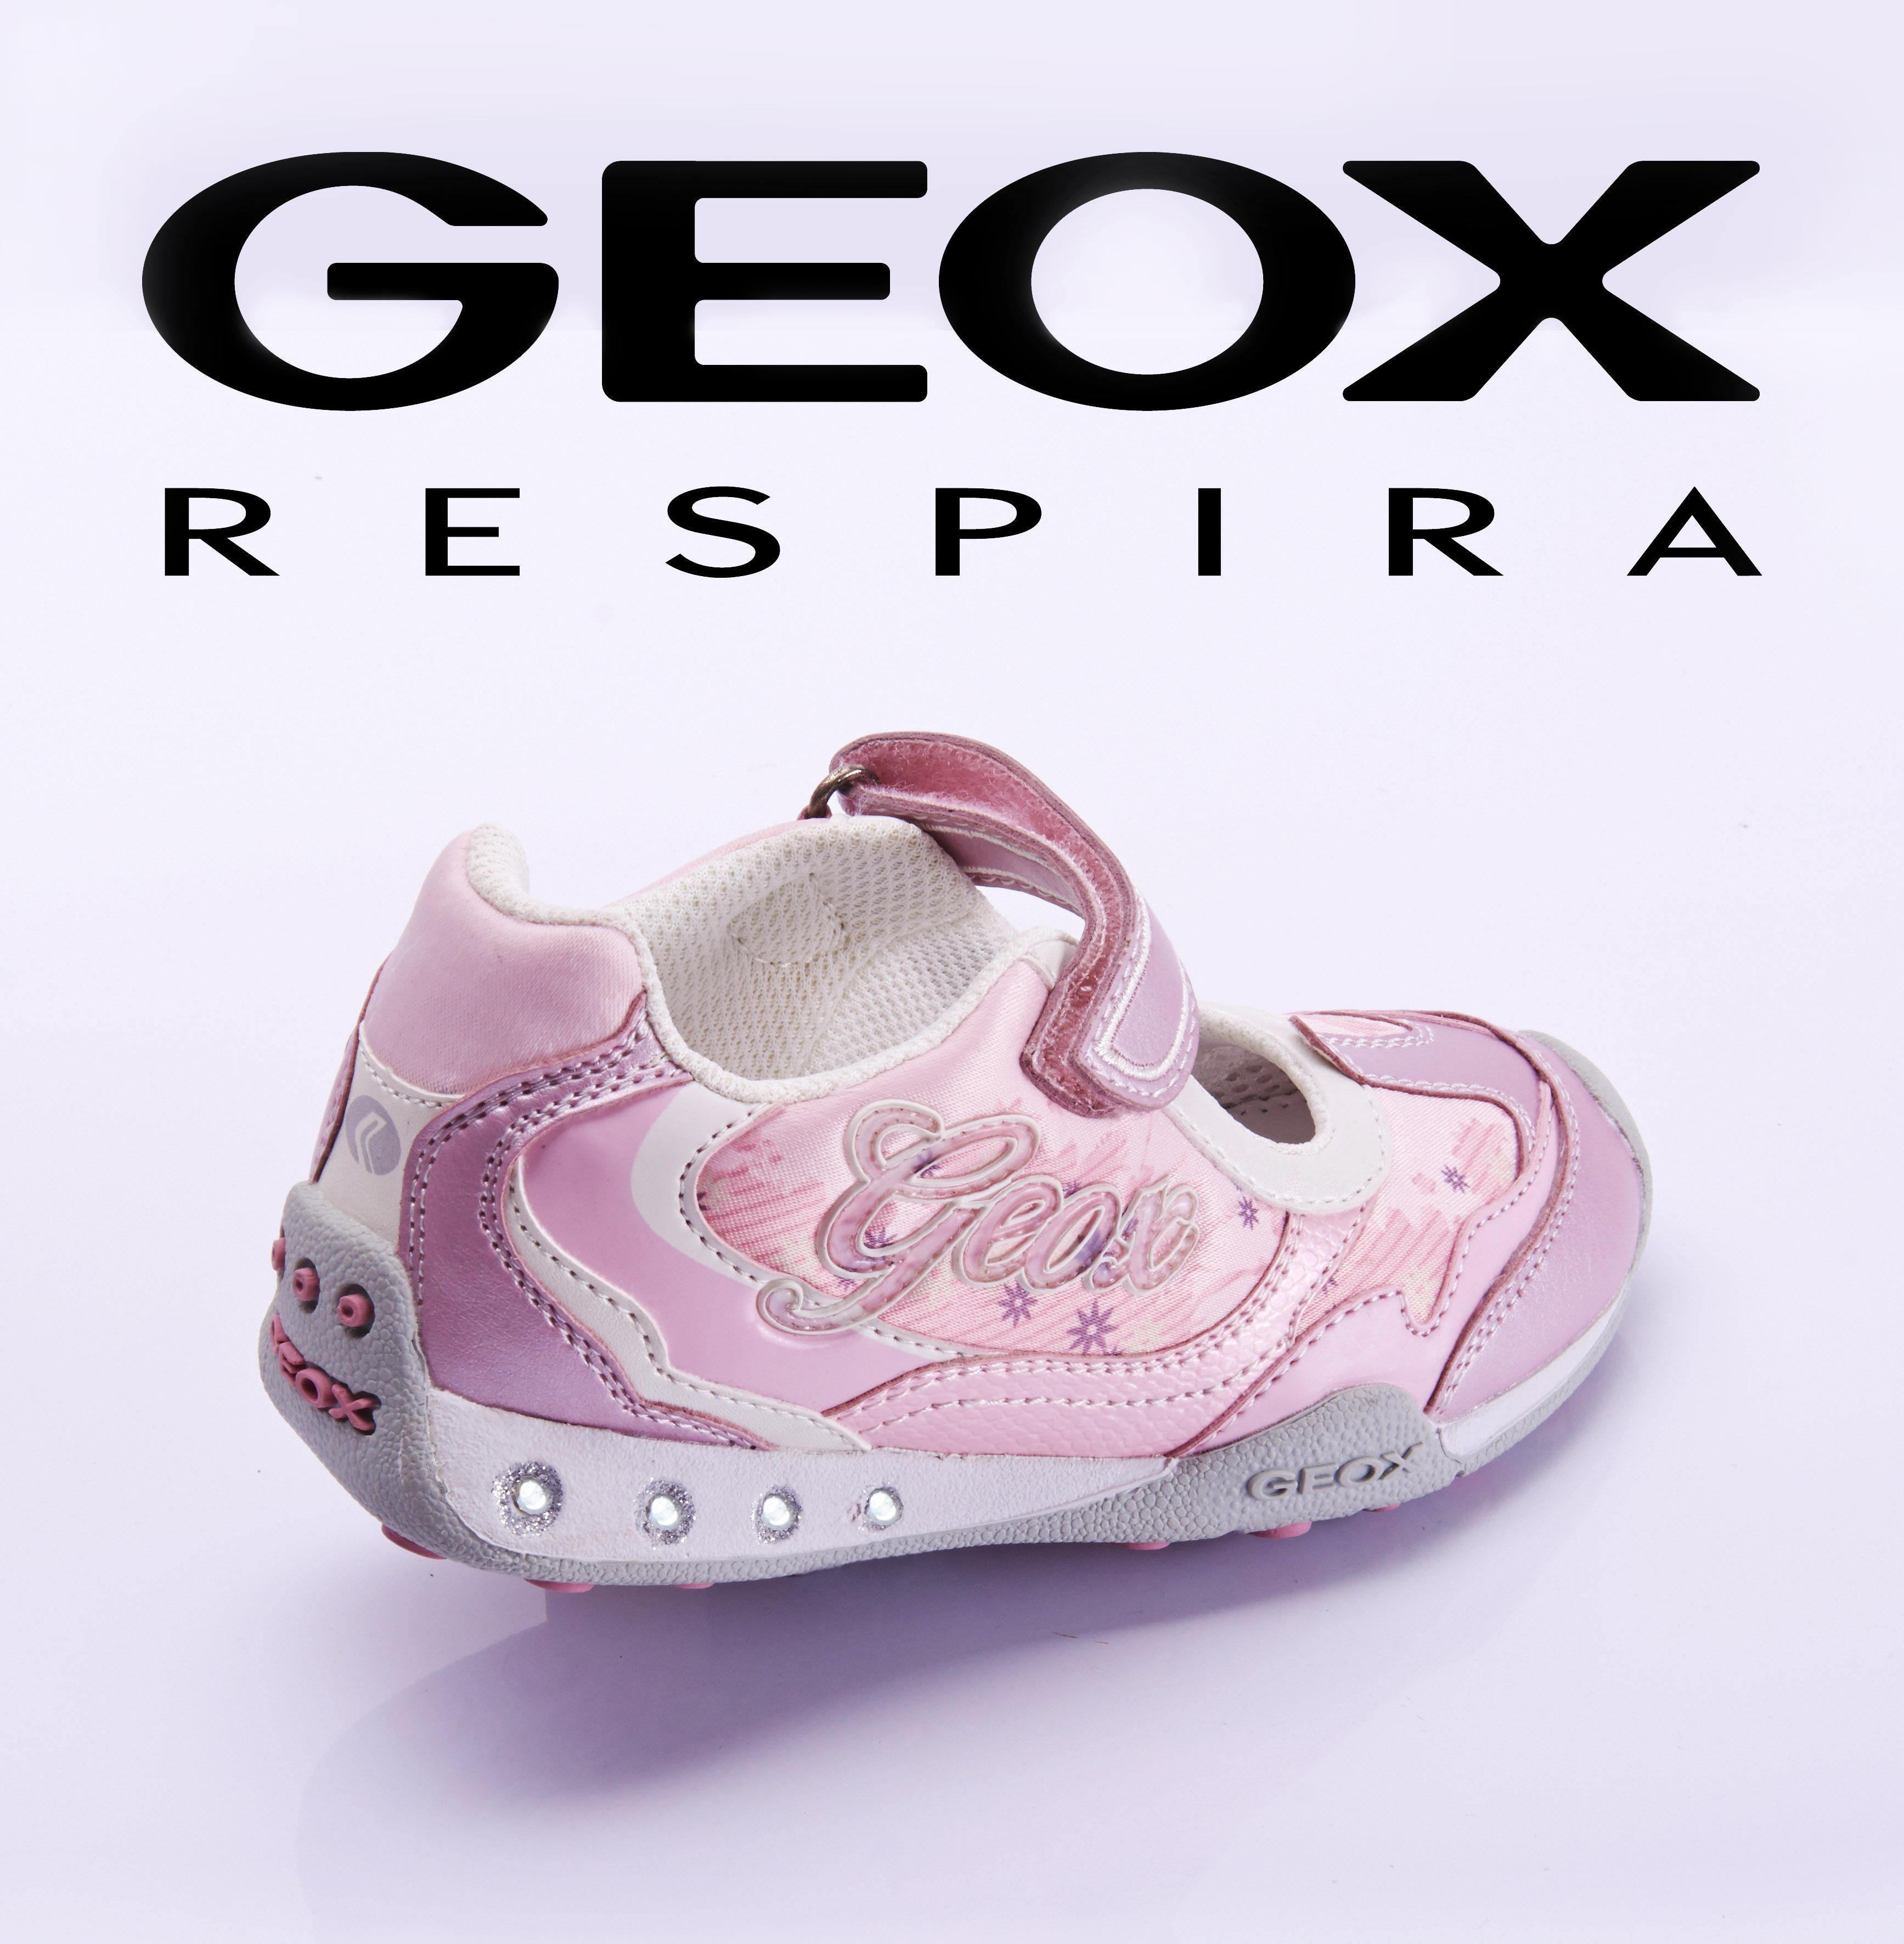 Geox Обувь Распродажа Интернет Магазин